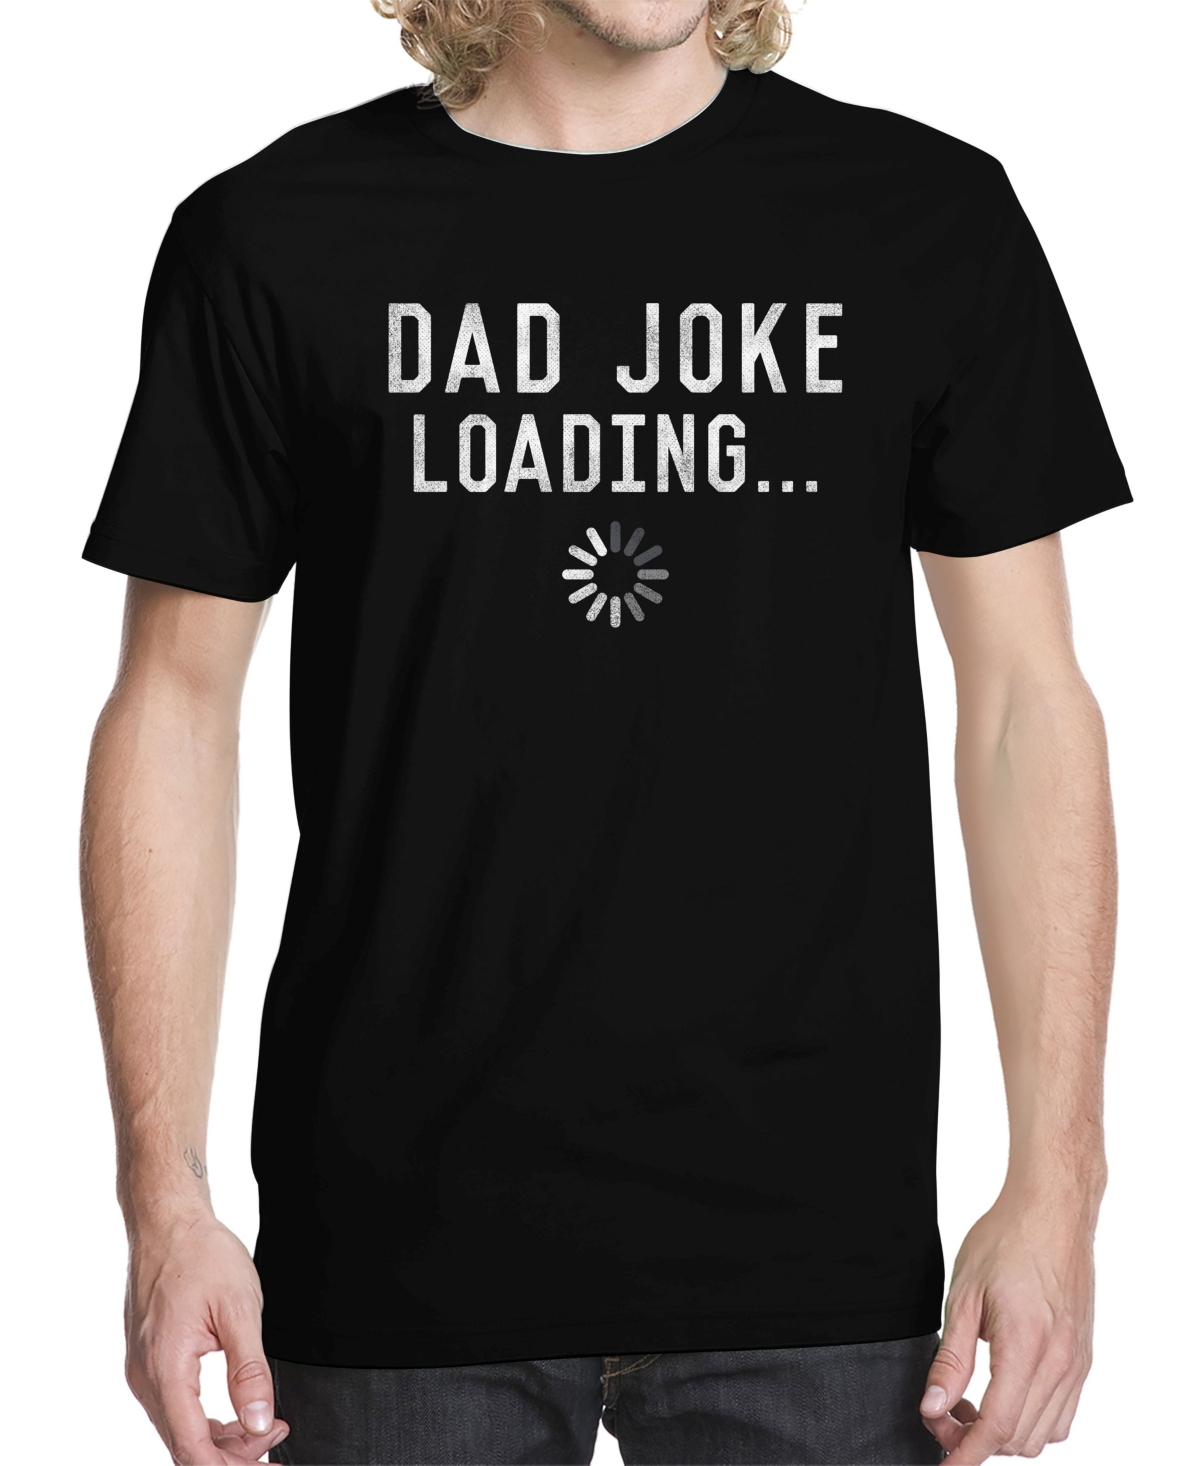 Men's Dad Joke Loading Graphic T-shirt - Black